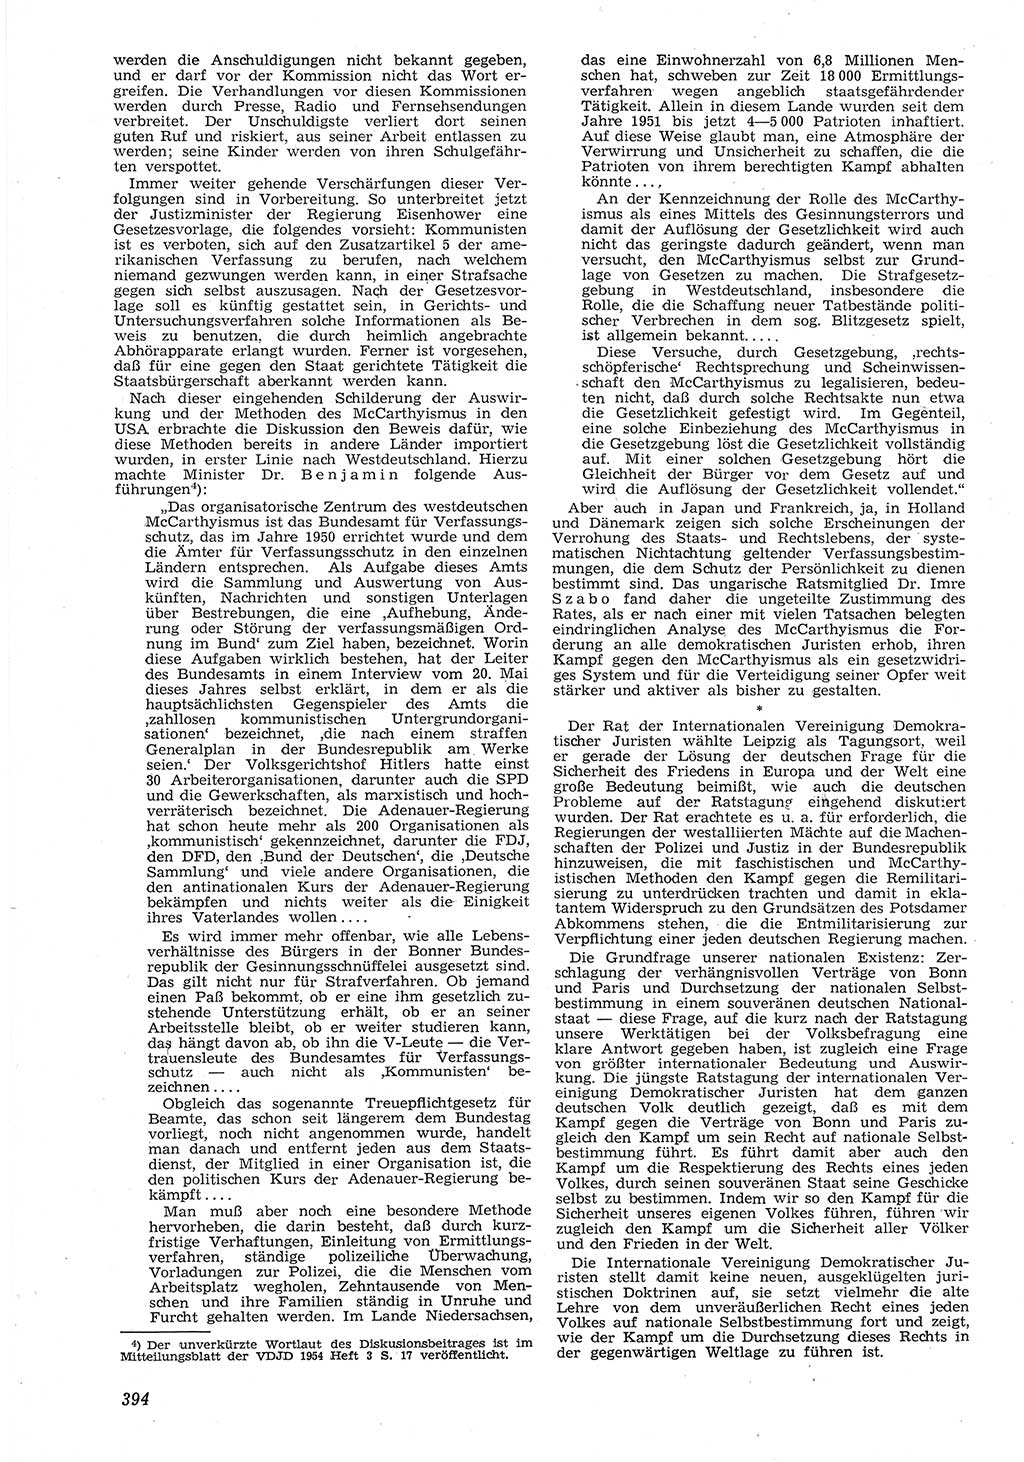 Neue Justiz (NJ), Zeitschrift für Recht und Rechtswissenschaft [Deutsche Demokratische Republik (DDR)], 8. Jahrgang 1954, Seite 394 (NJ DDR 1954, S. 394)